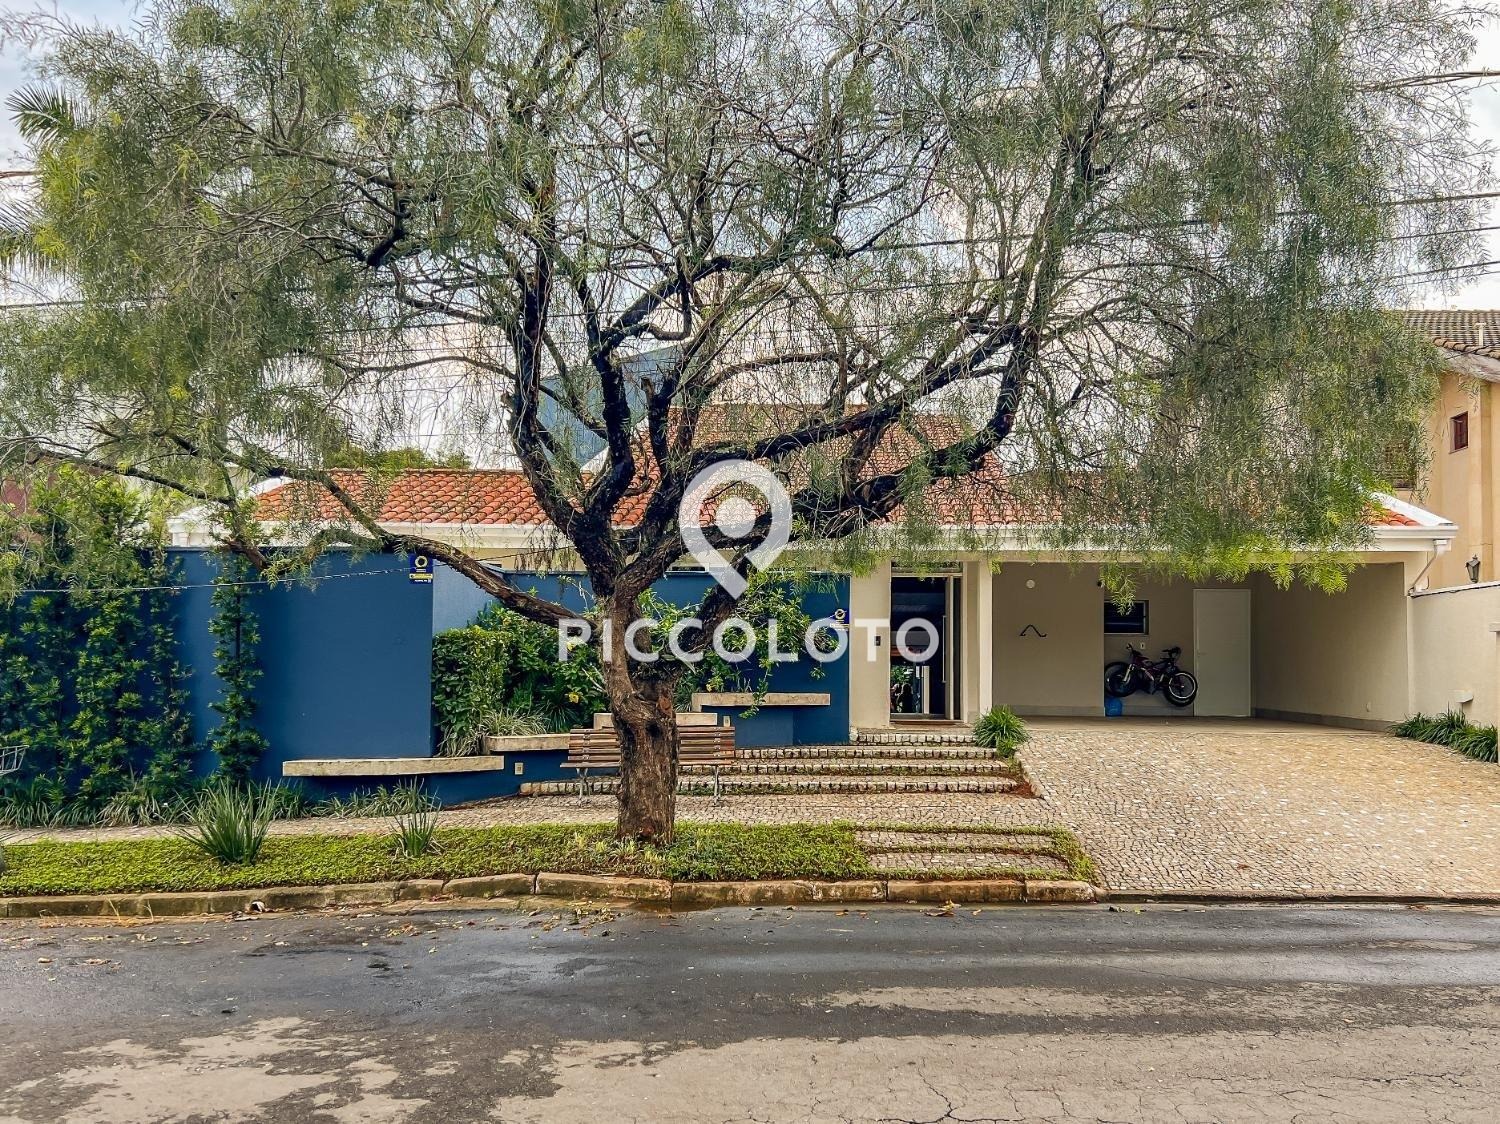 Piccoloto - Casa à venda no Loteamento Caminhos de São Conrado (Sousas) em Campinas